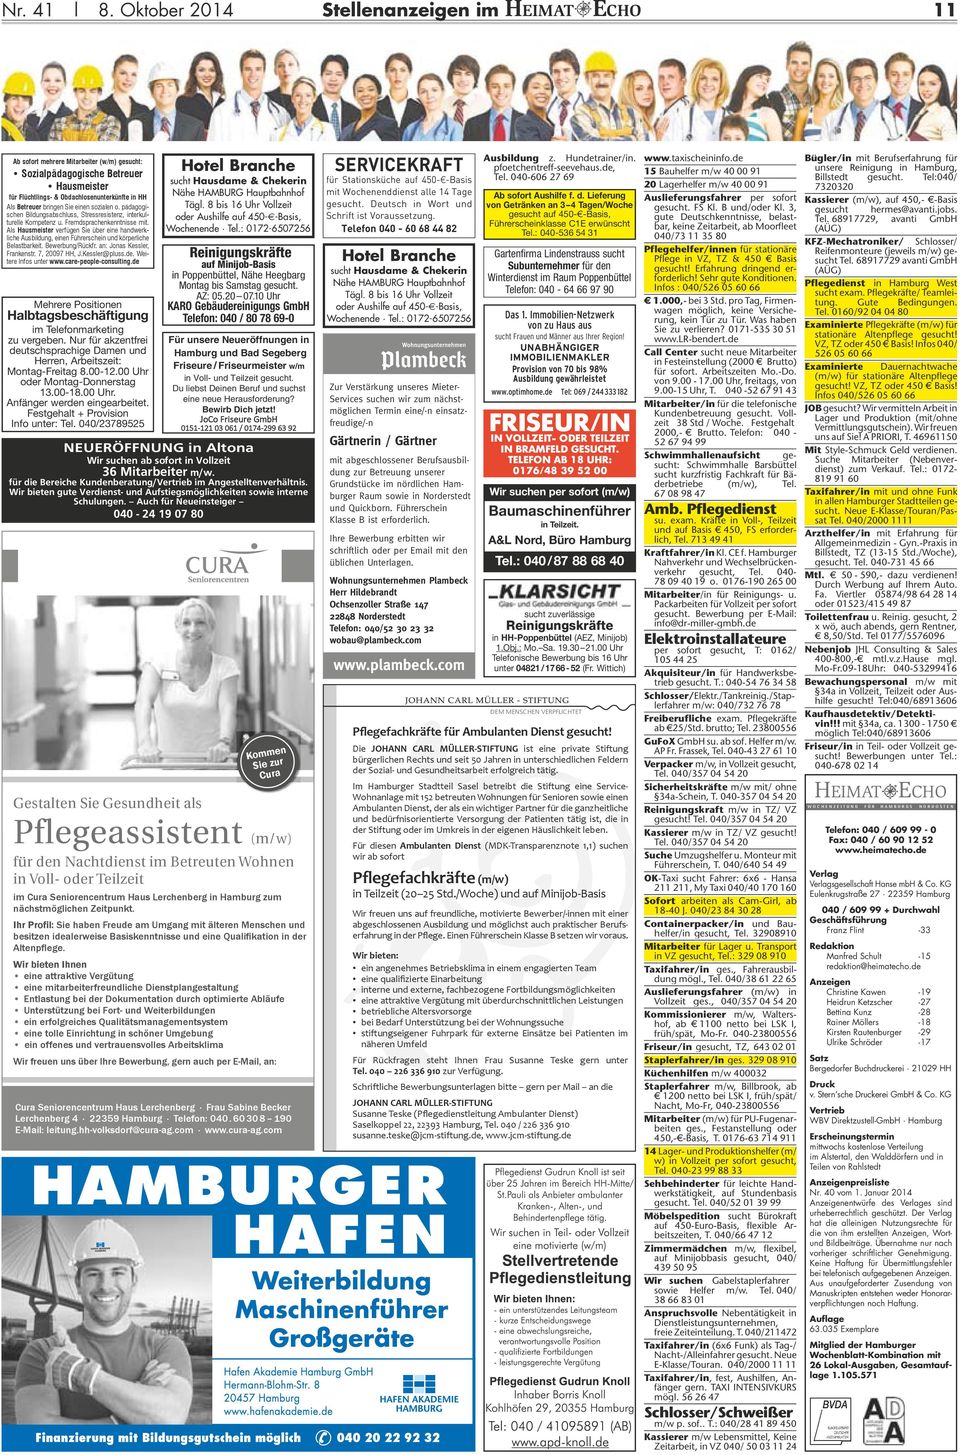 Weitere Infos unter Für unsere Neueröffnungen in Hamburg und Bad Segeberg Friseure / Friseurmeister w/m in Voll- und Teilzeit gesucht. Du liebst Deinen Beruf und suchst eine neue Herausforderung?